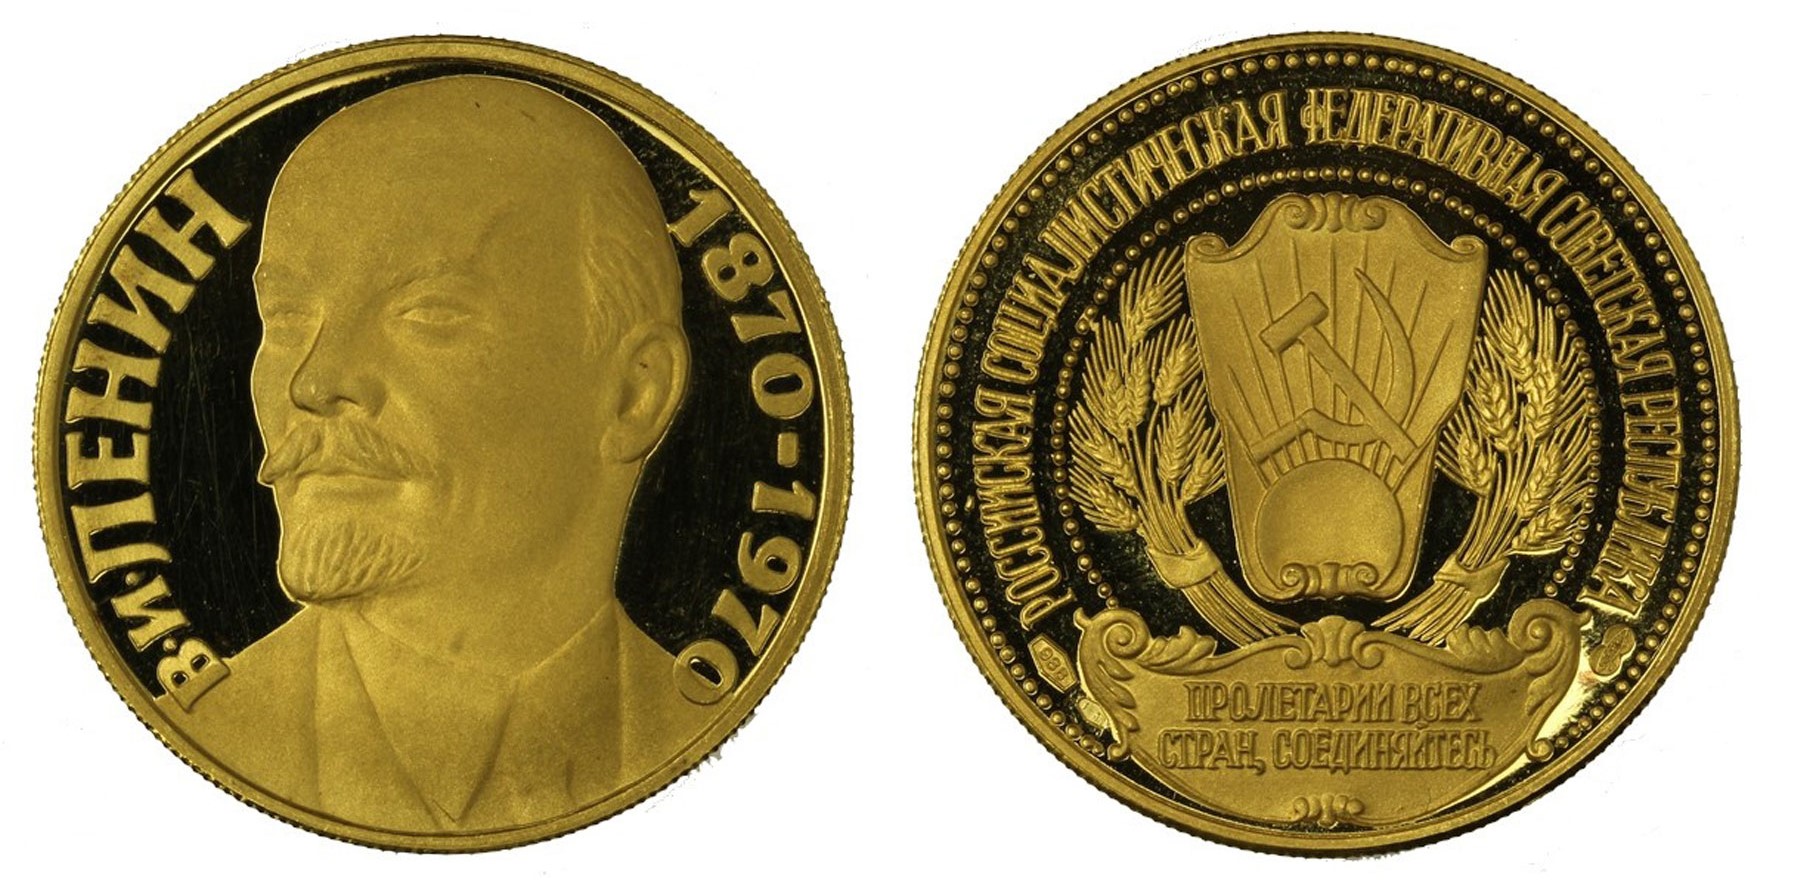 Medaglia da 30 ducati gr. 17,50 in oro 986/000 - astuccio e certificato originali